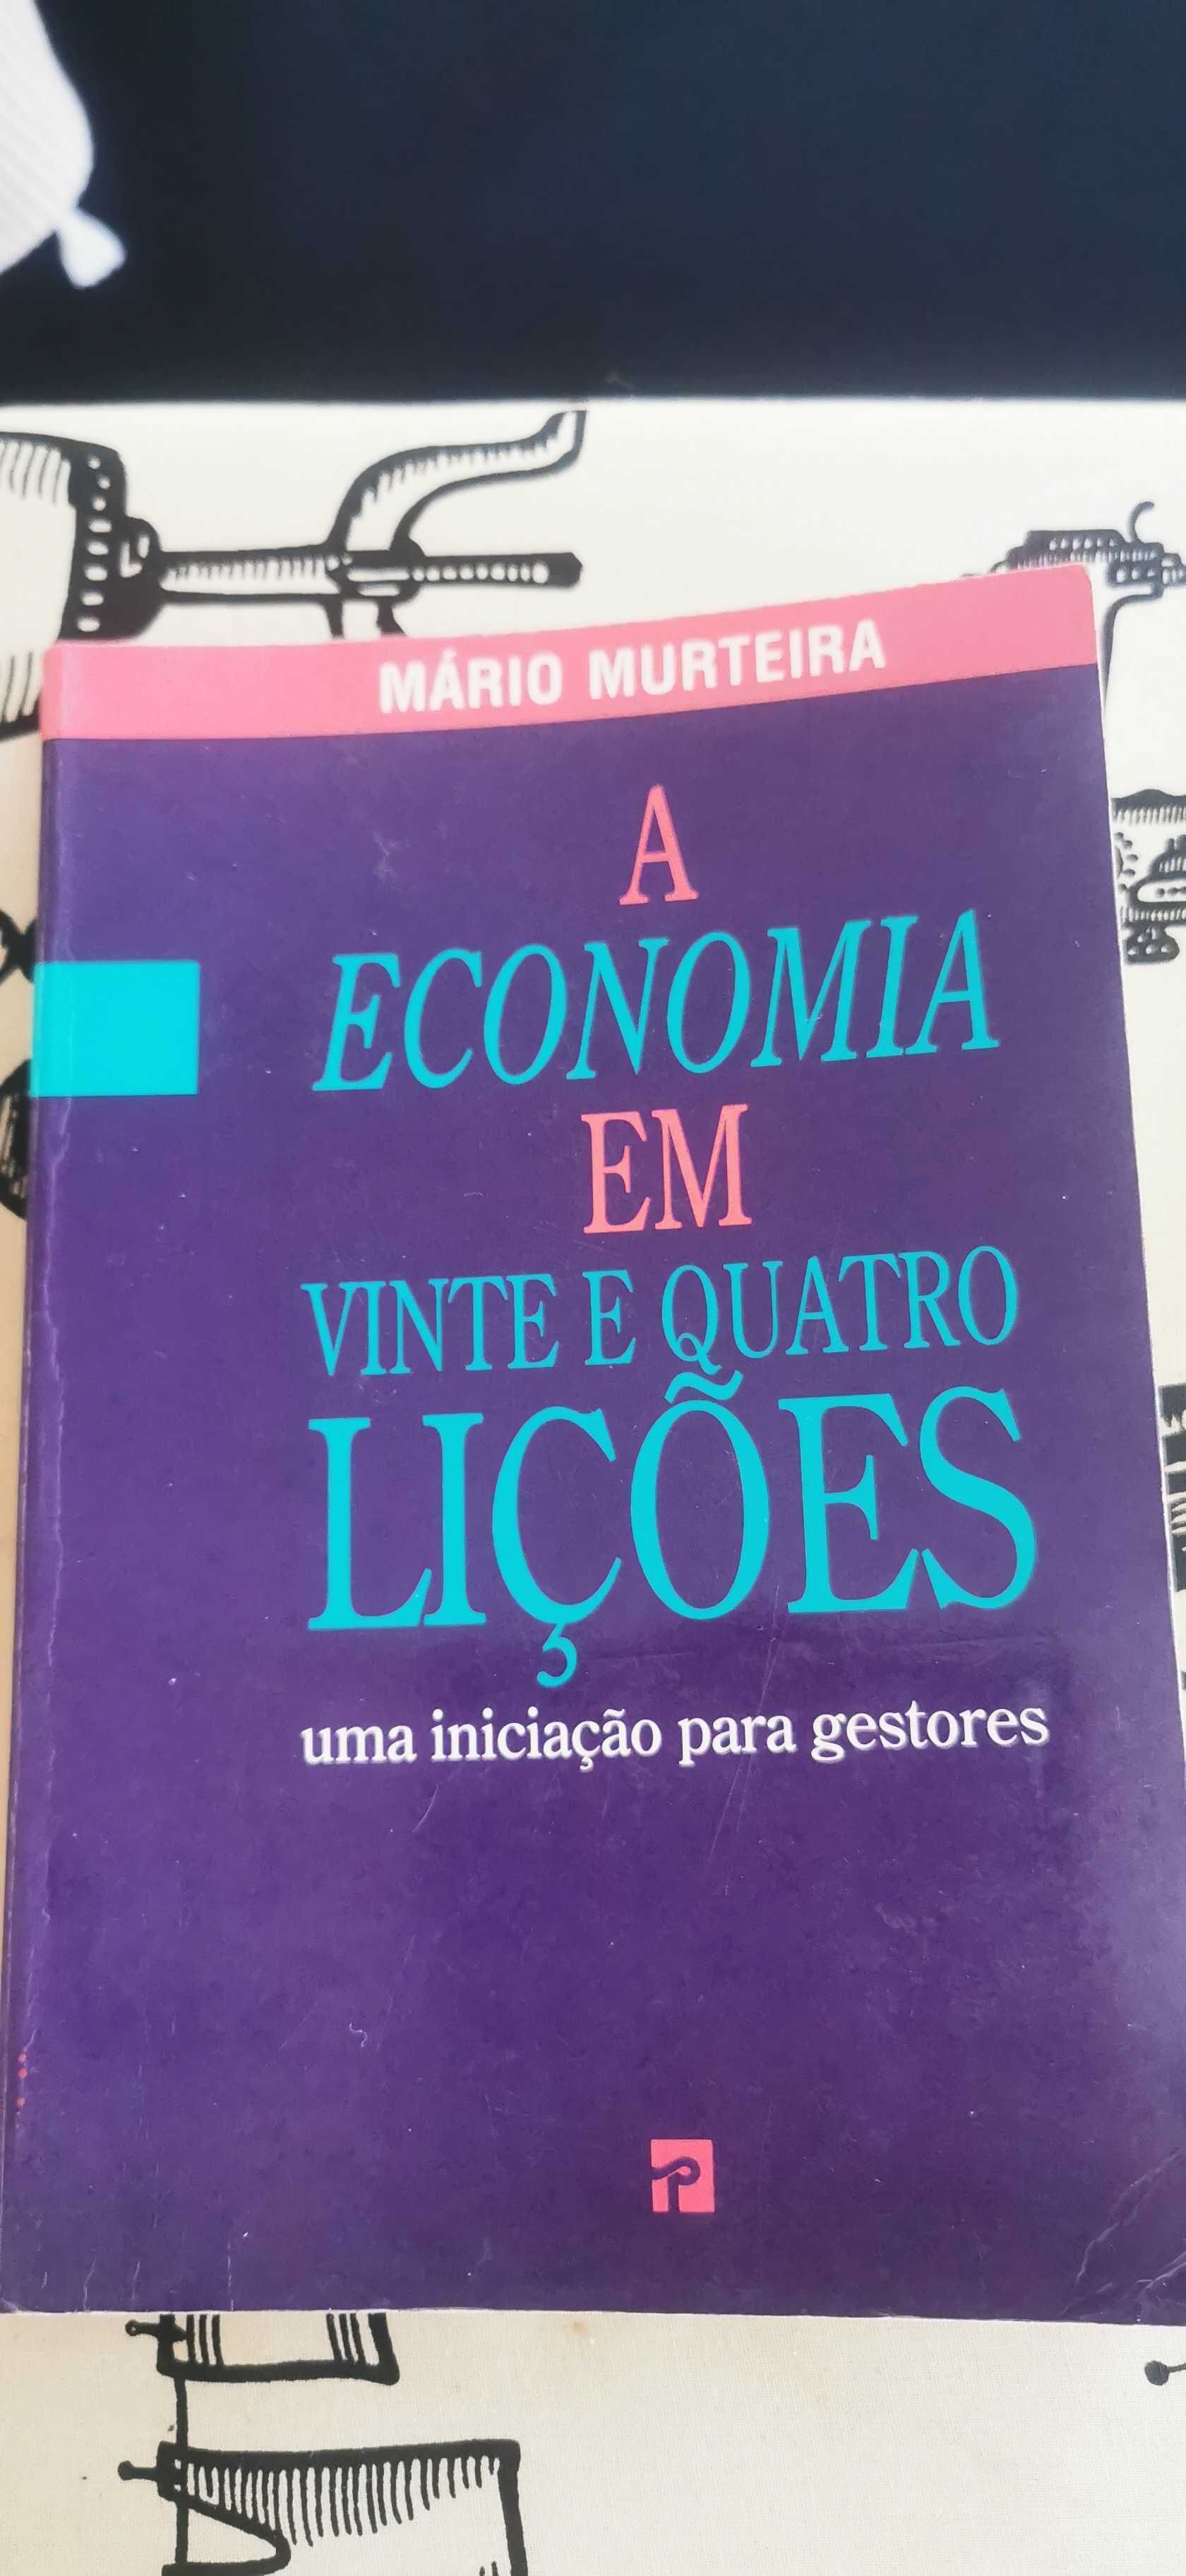 Vendo livro "A Economia em vinte e quatro lições"